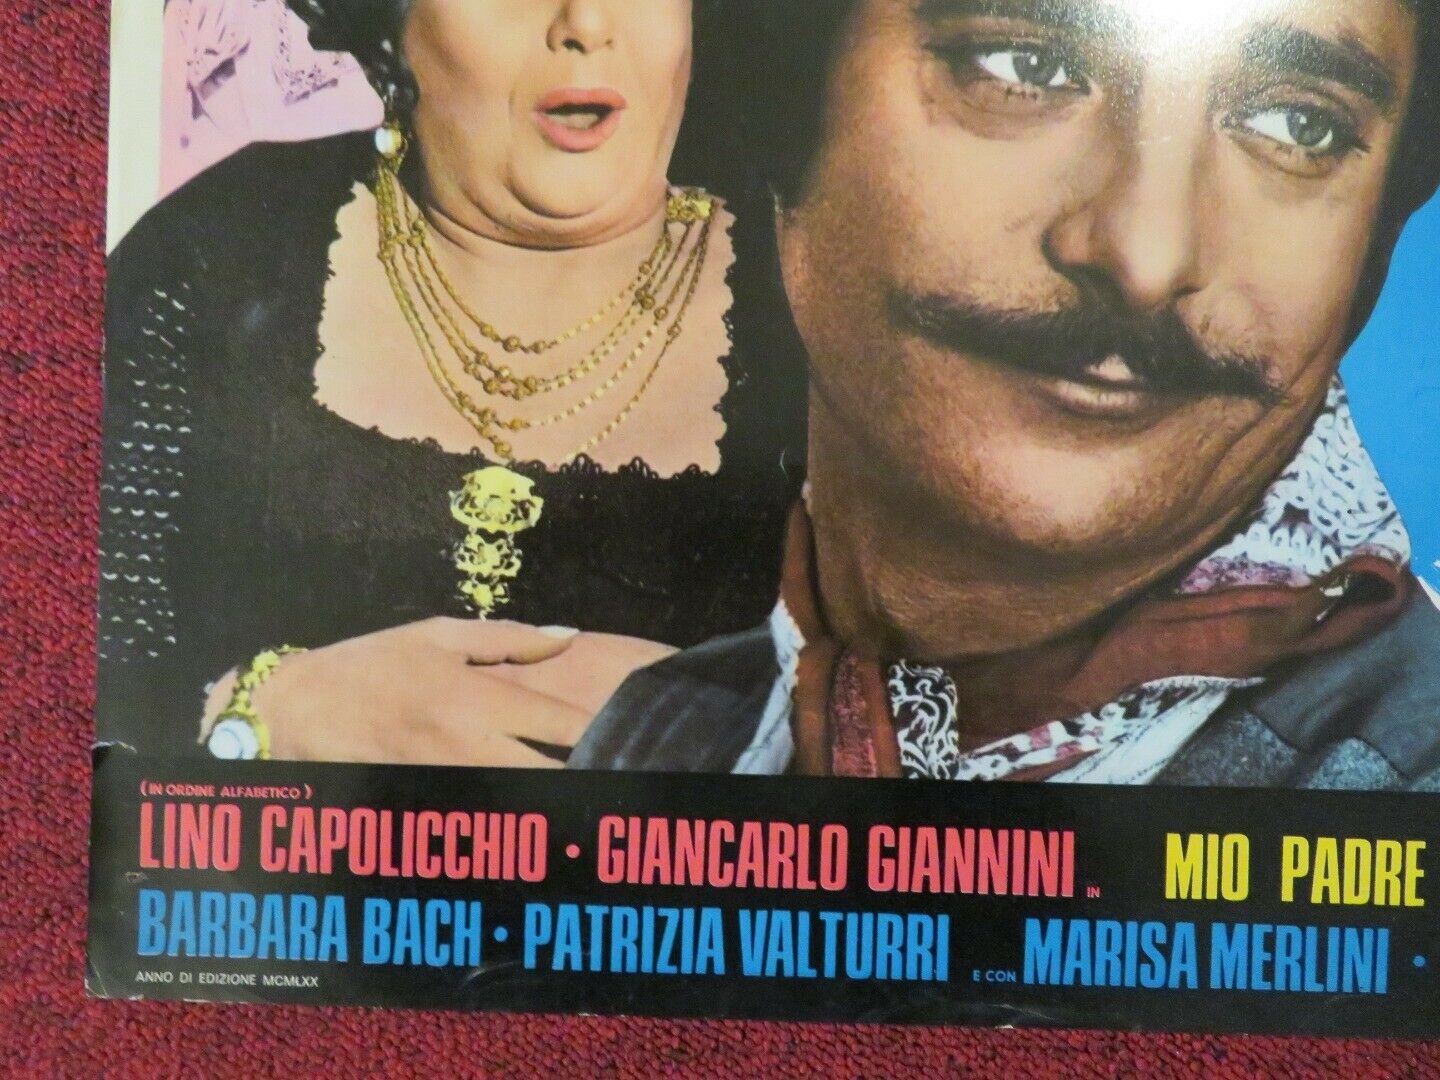 "STORIA D'AMORE E DI... MONARCHIA  - A ITALIAN FOTOBUSTA POSTER 1971